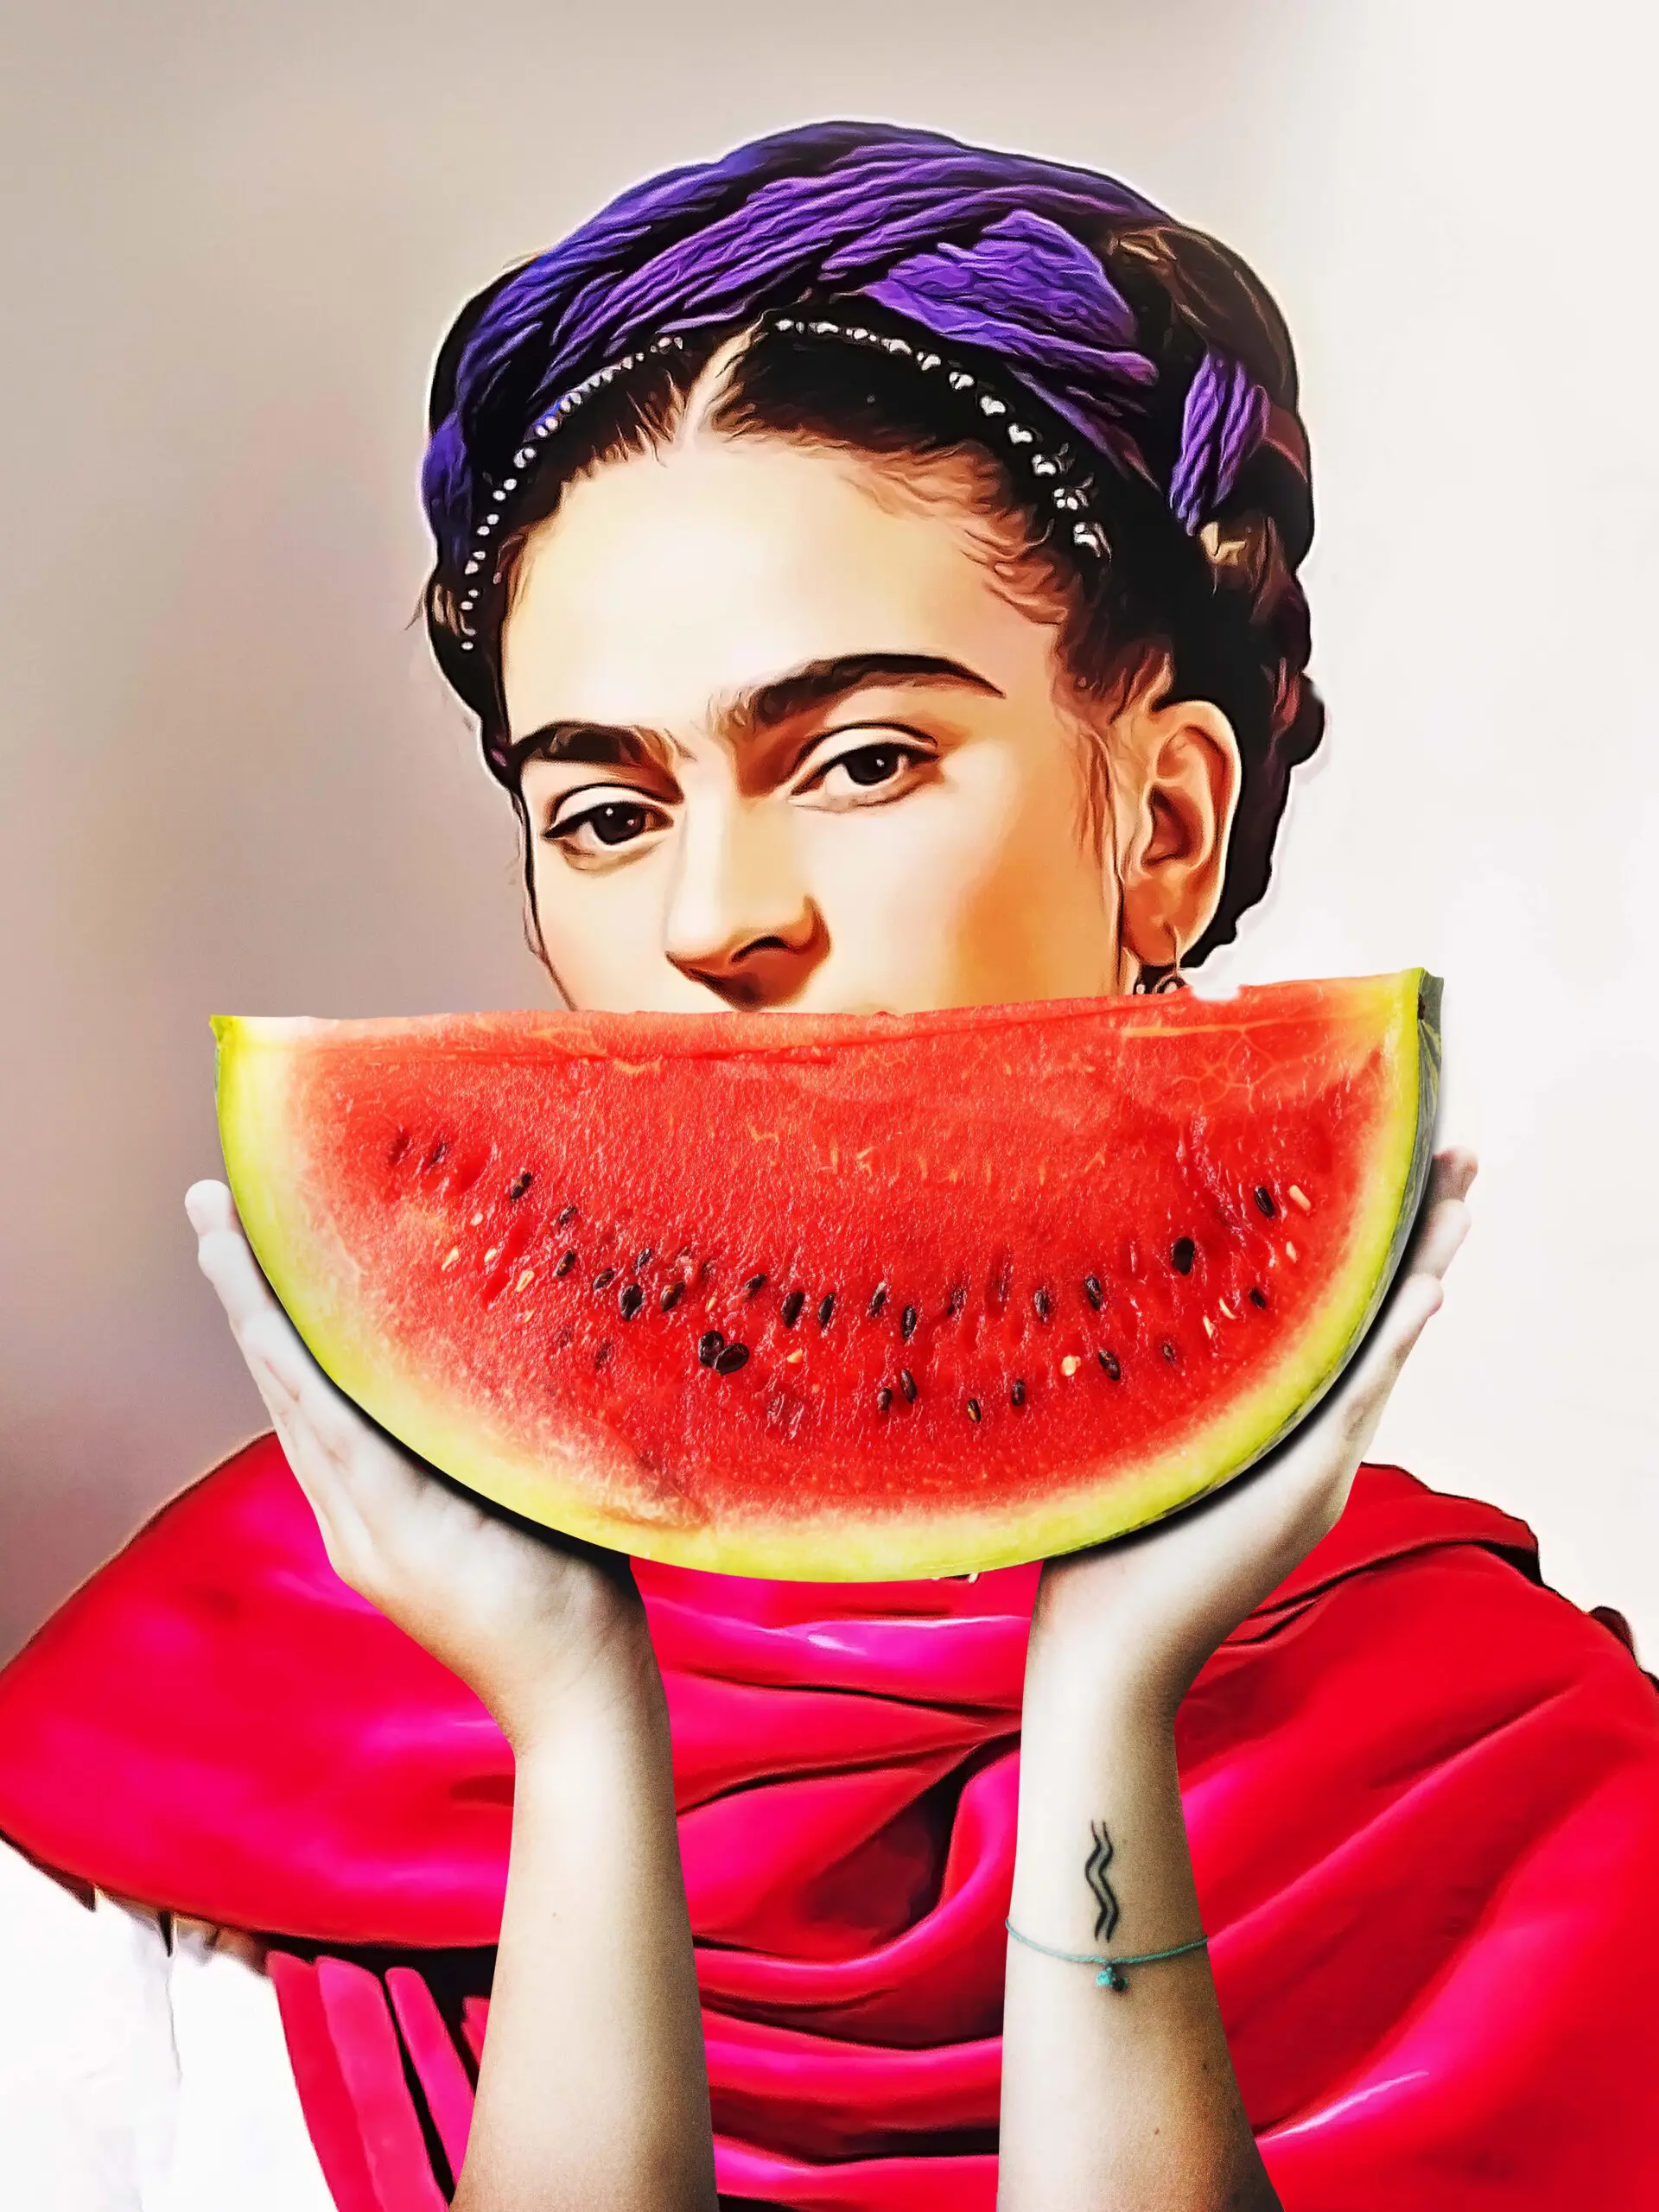 Wandbild (26039) Watermelon Frida by Dikhotomy präsentiert: Menschen,Kreatives